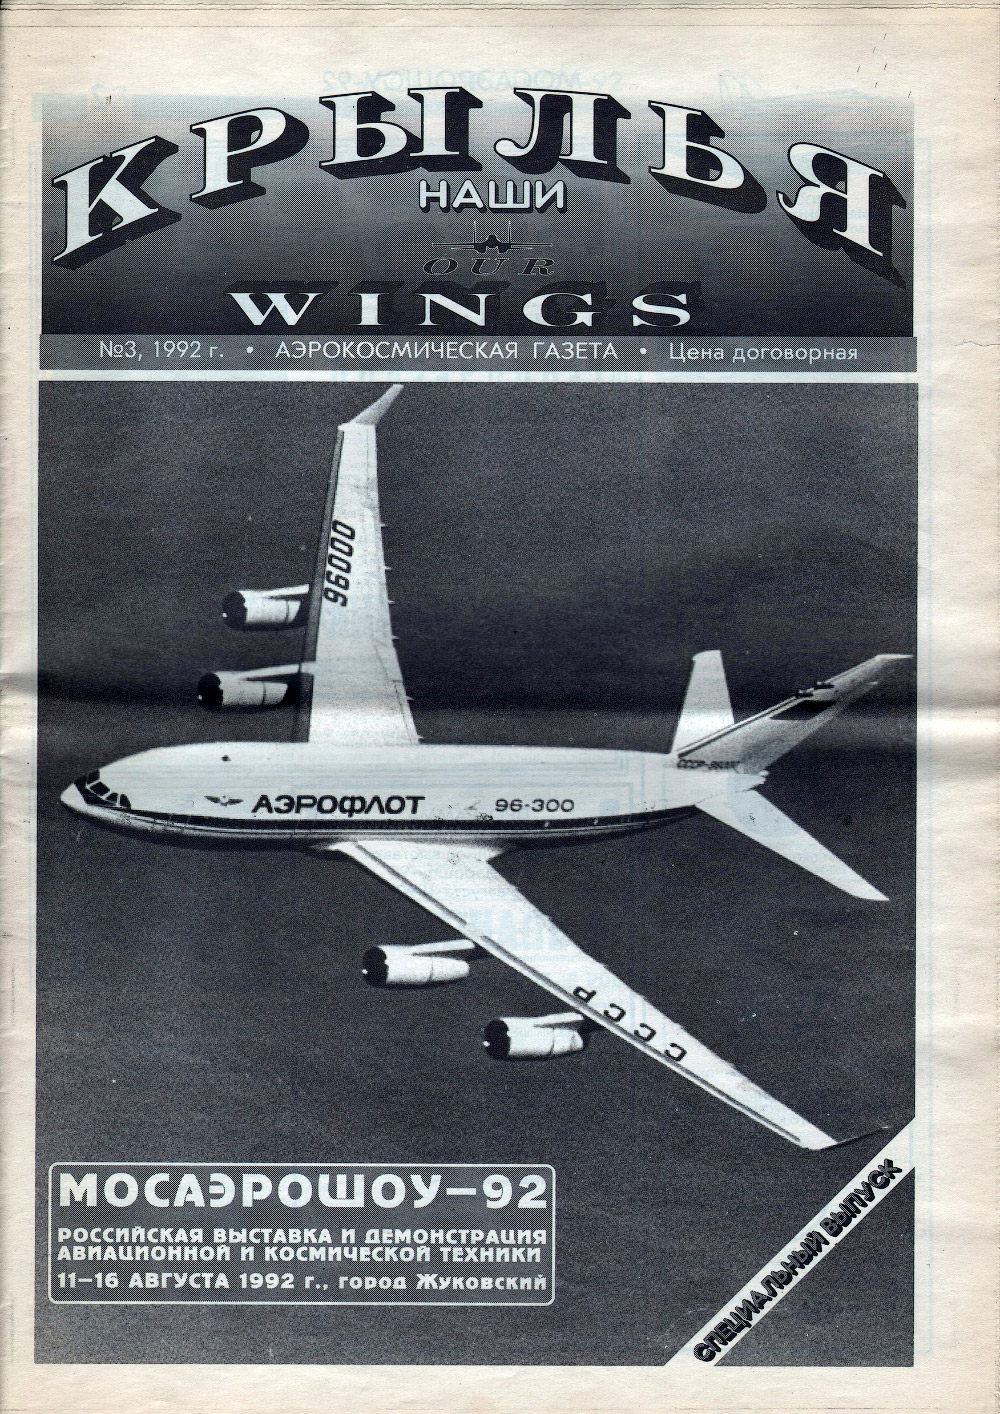 Спецвыпуск журнала «Крылья», посвященного МосАэроШоу-92